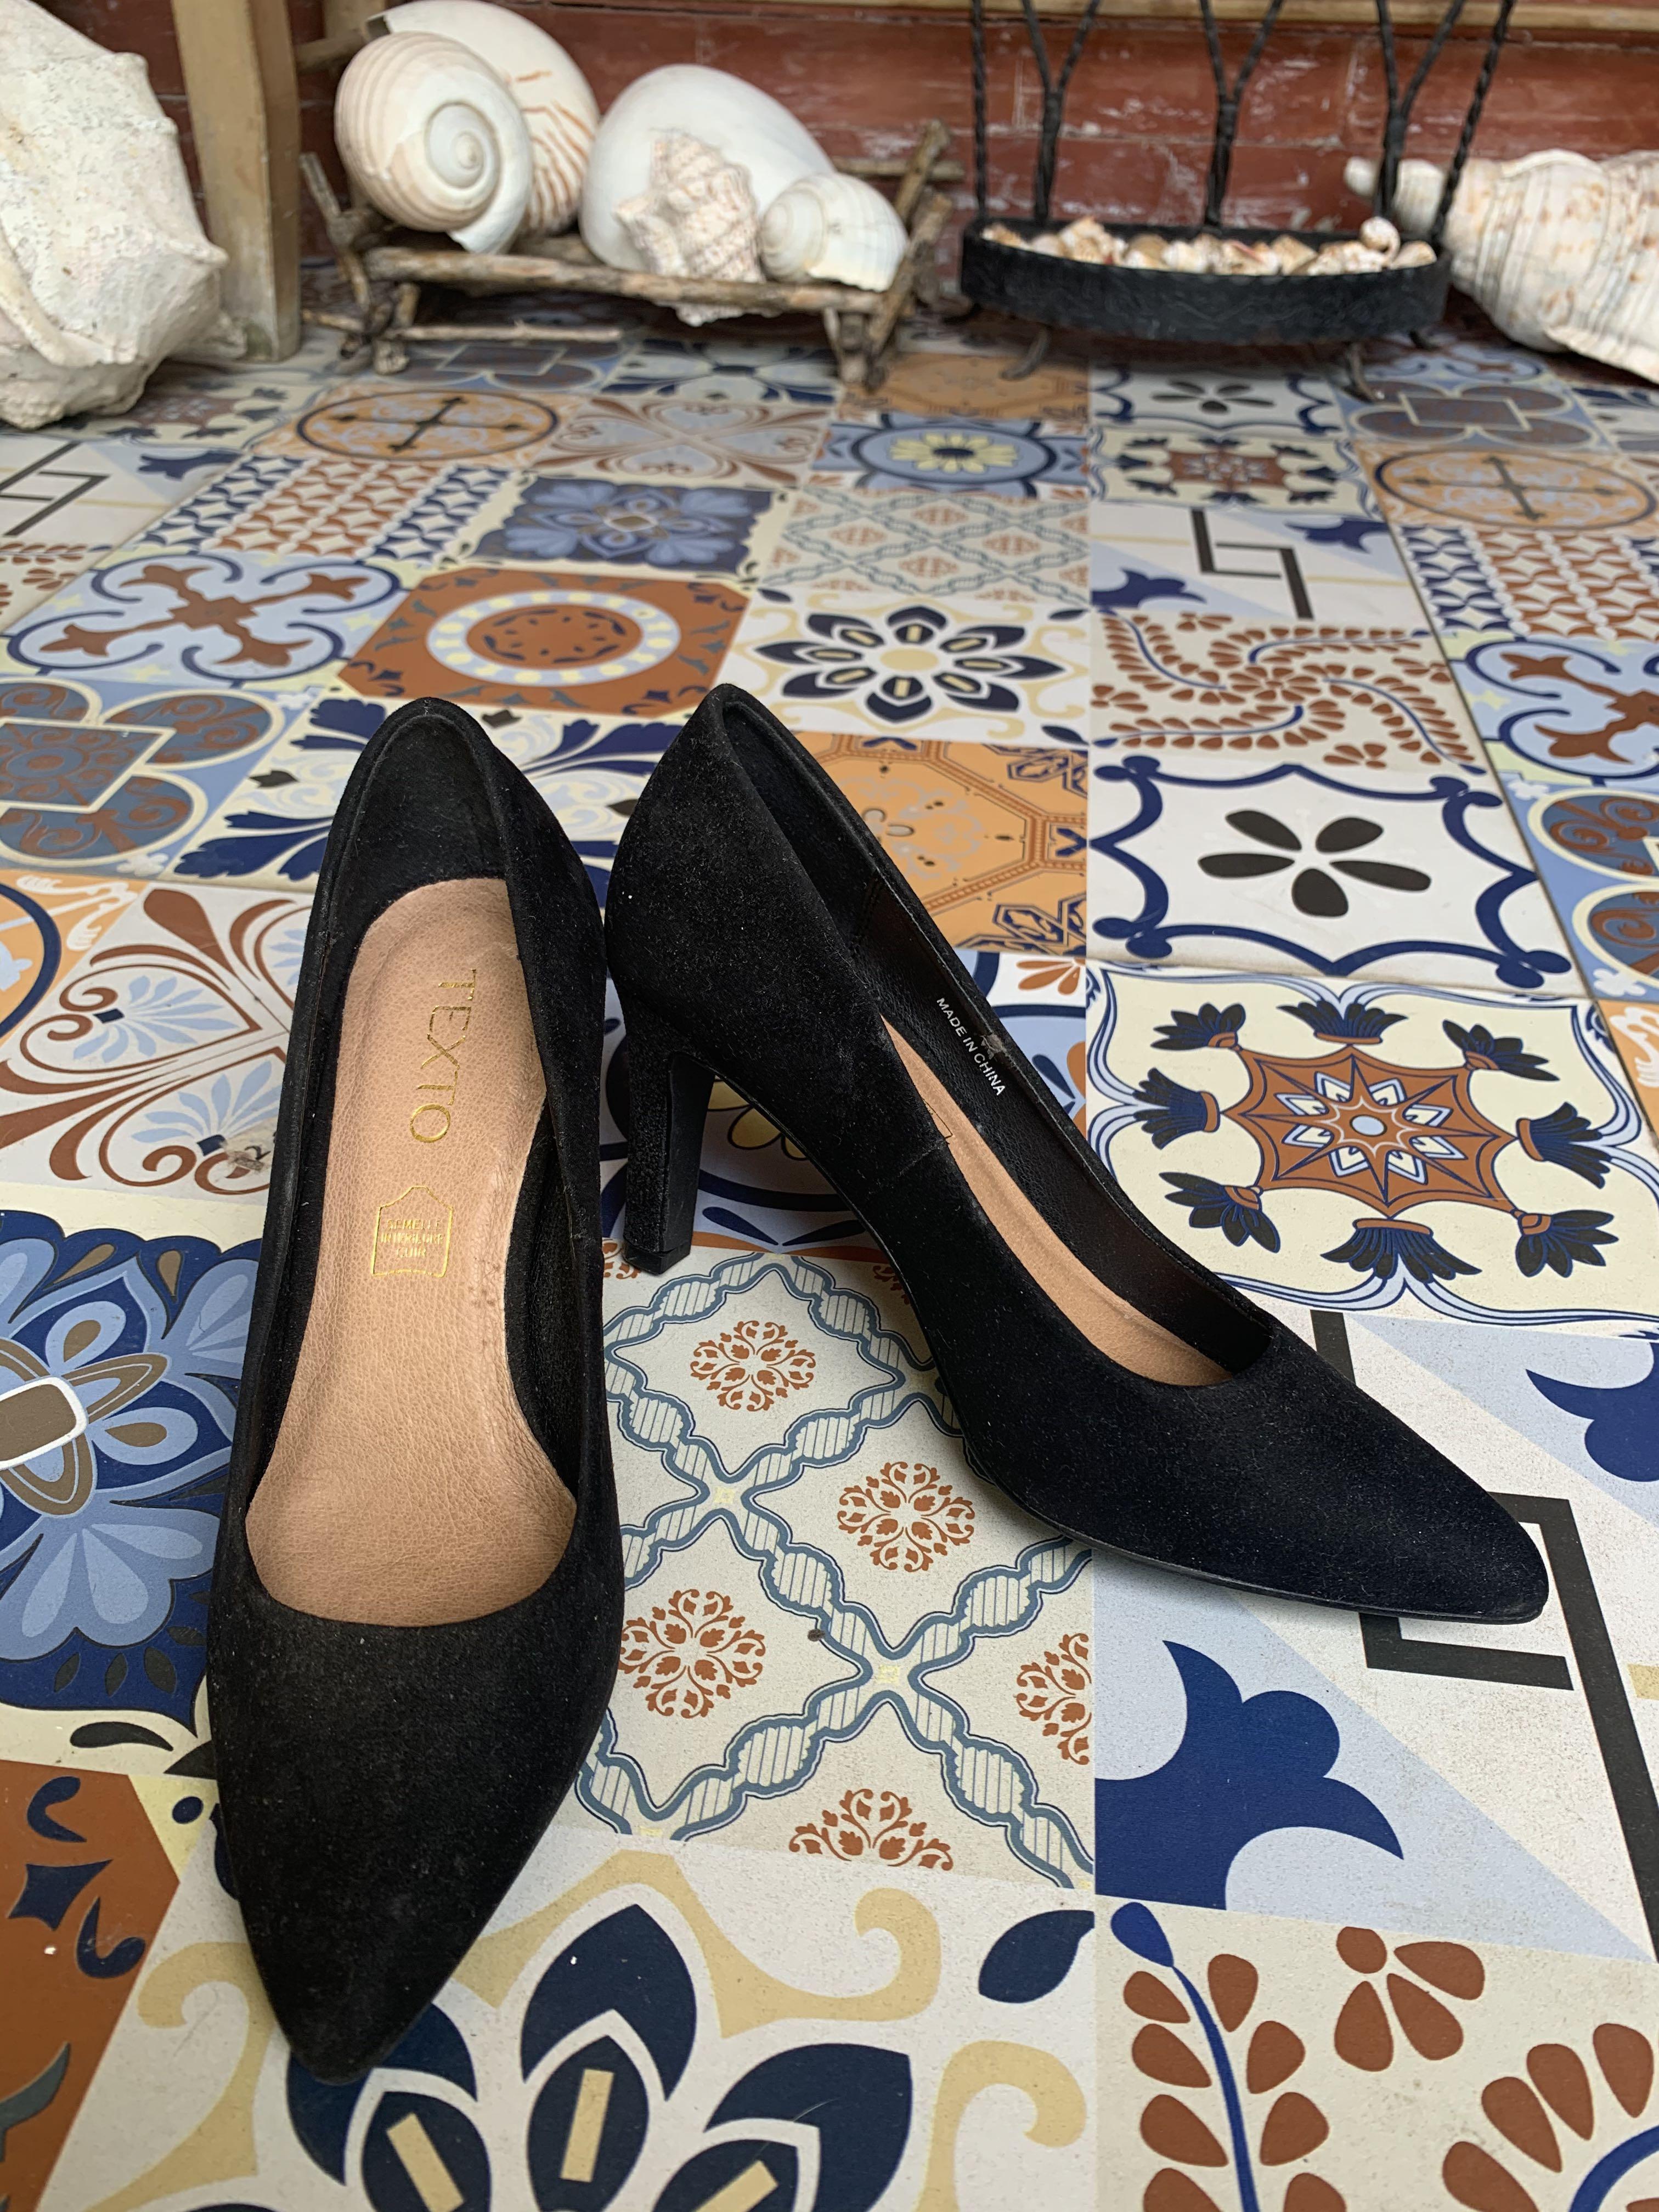 black heels women's shoes